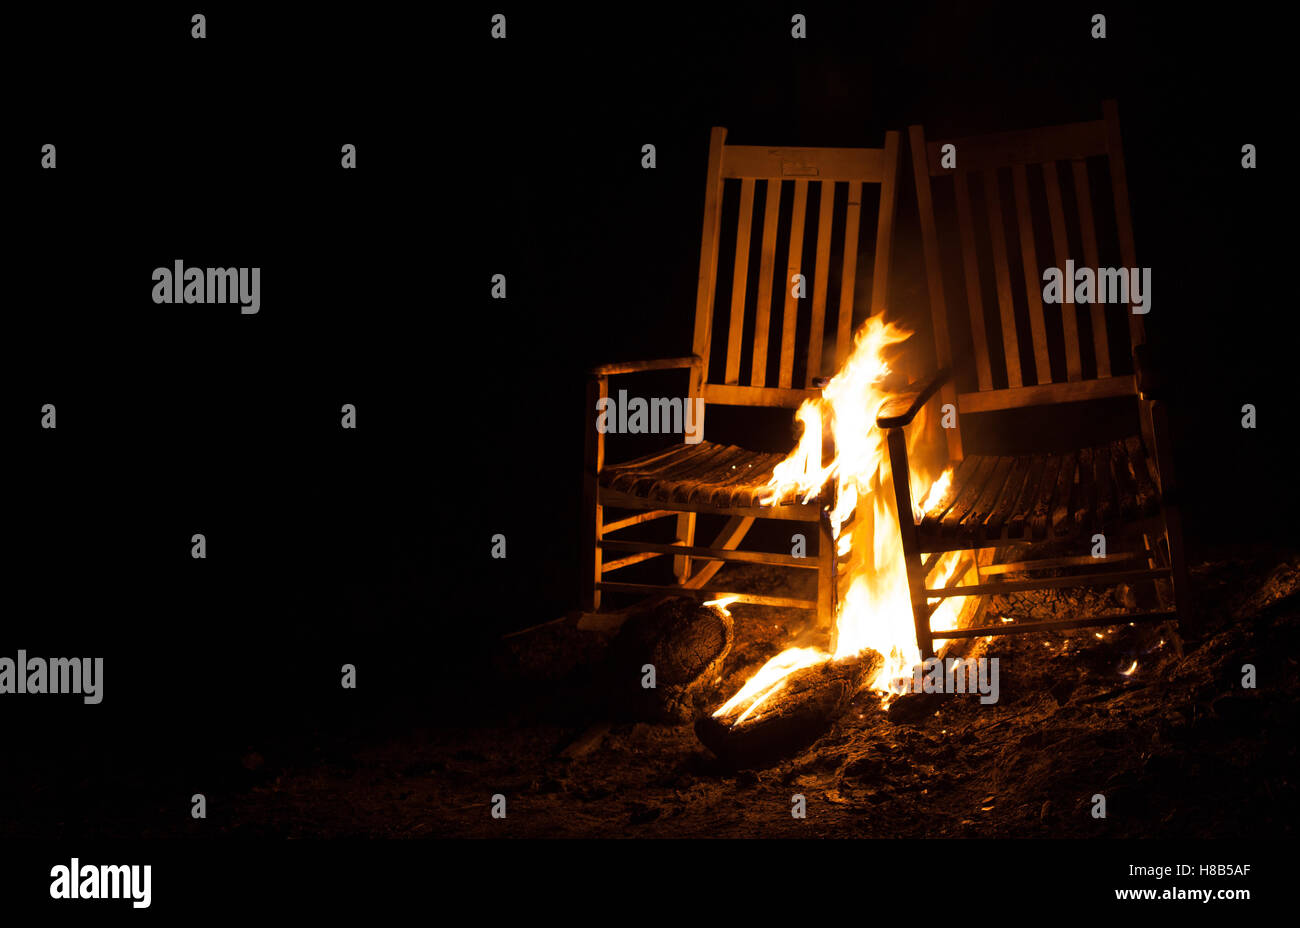 Le feu qui brûle sur une paire de vieilles chaises à bascule Banque D'Images